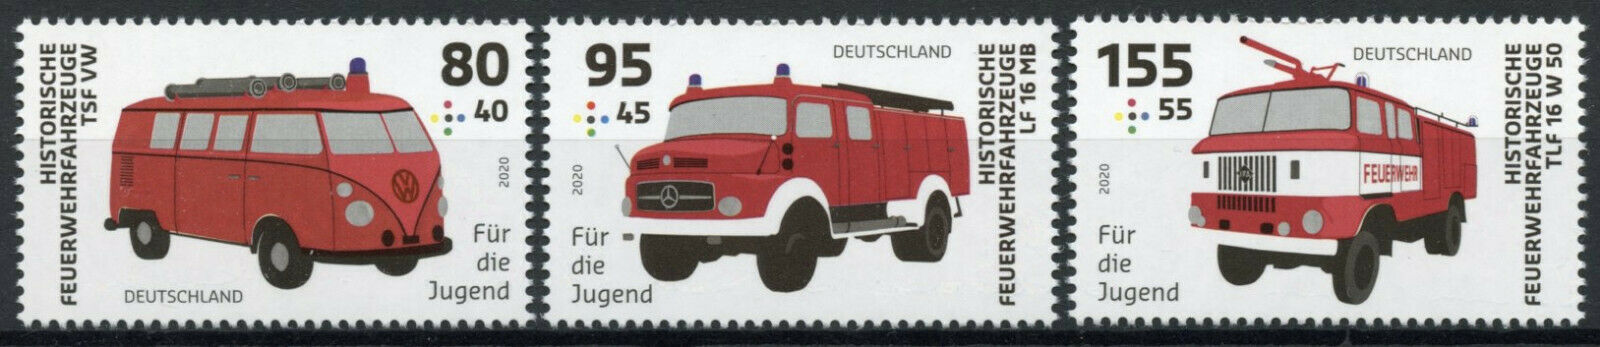 Germany Historic Fire Engines Stamps 2020 MNH VW Mercedes Benz Trucks 3v Set